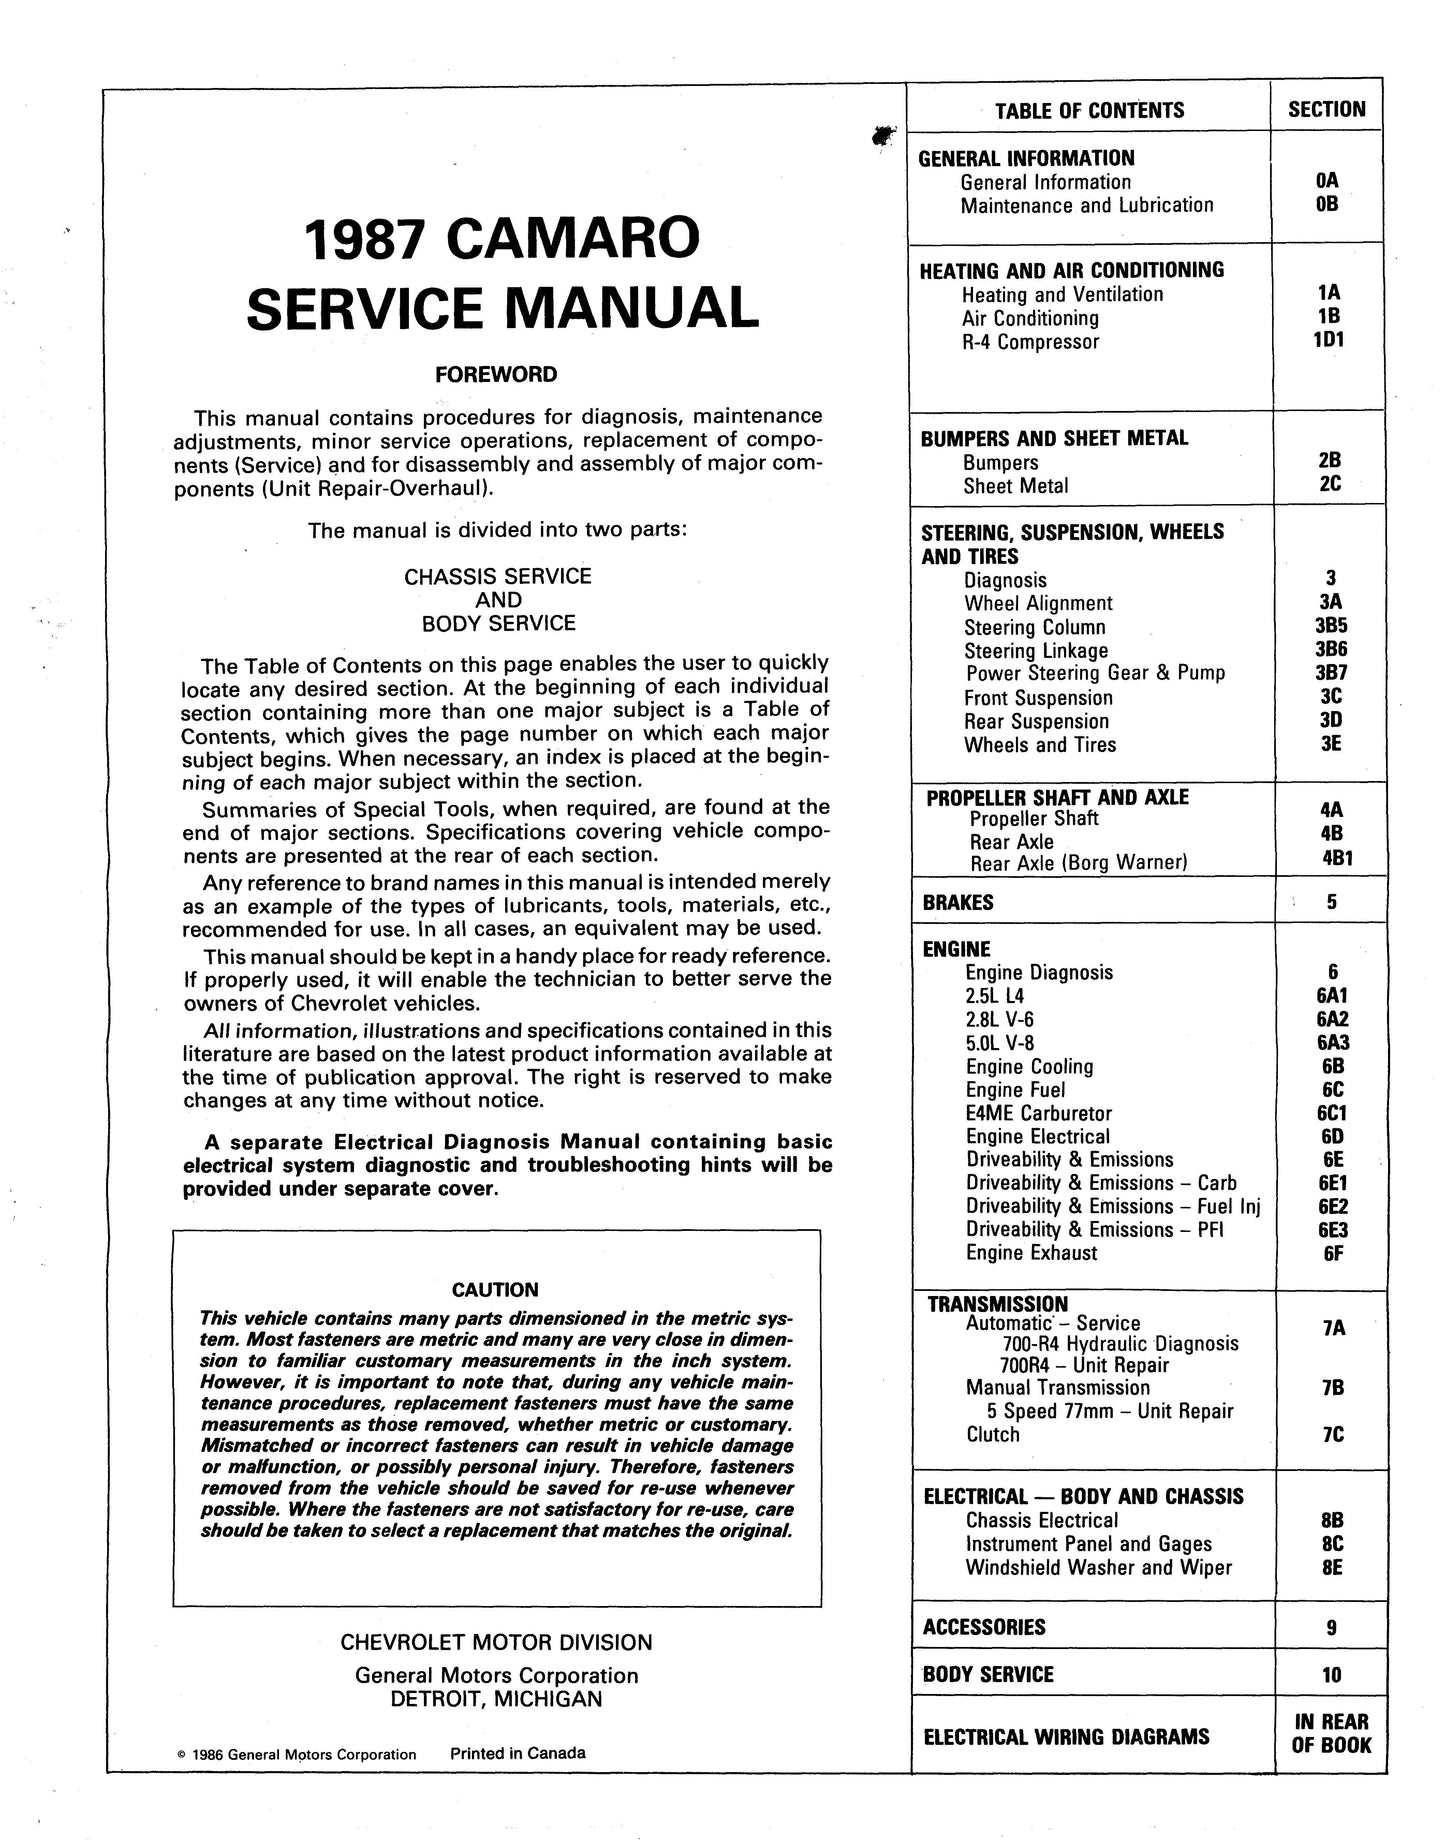 1986-1987 Chevrolet Camaro Shop Manuals